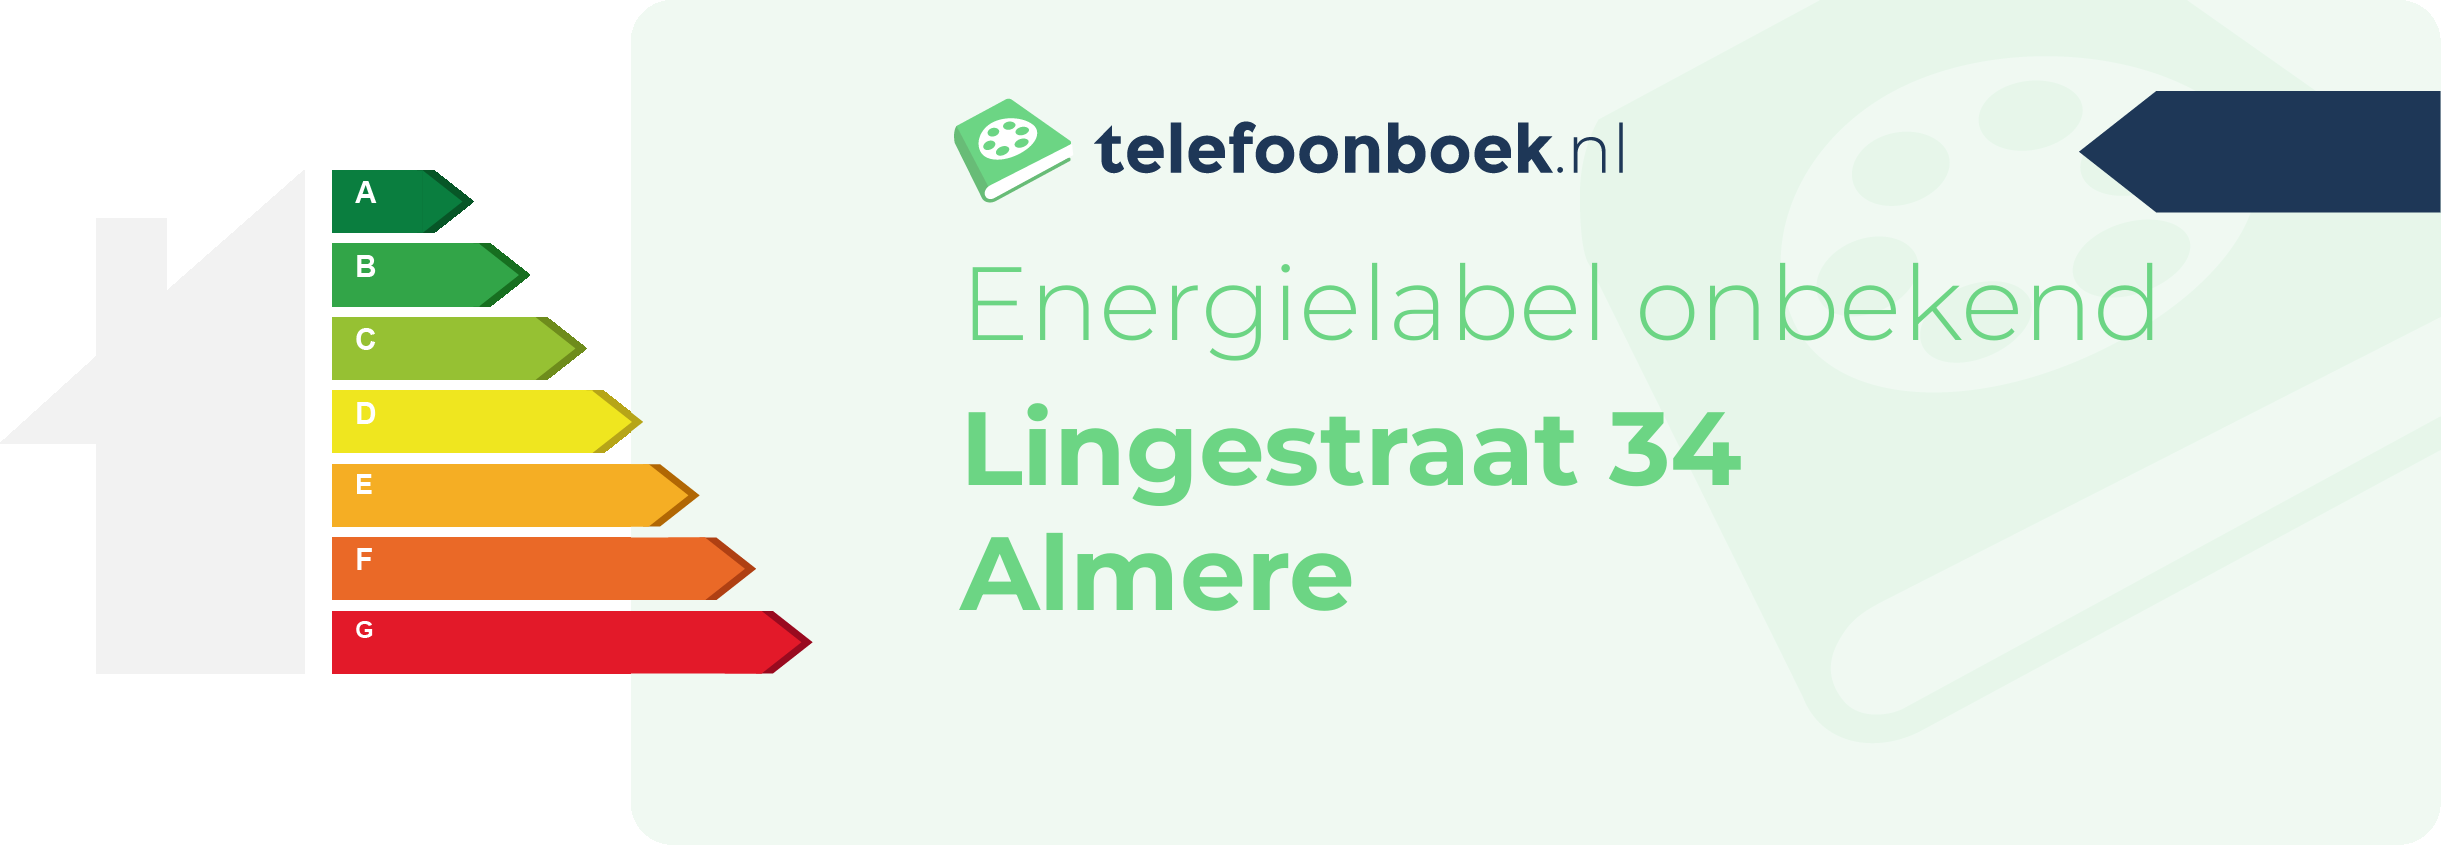 Energielabel Lingestraat 34 Almere